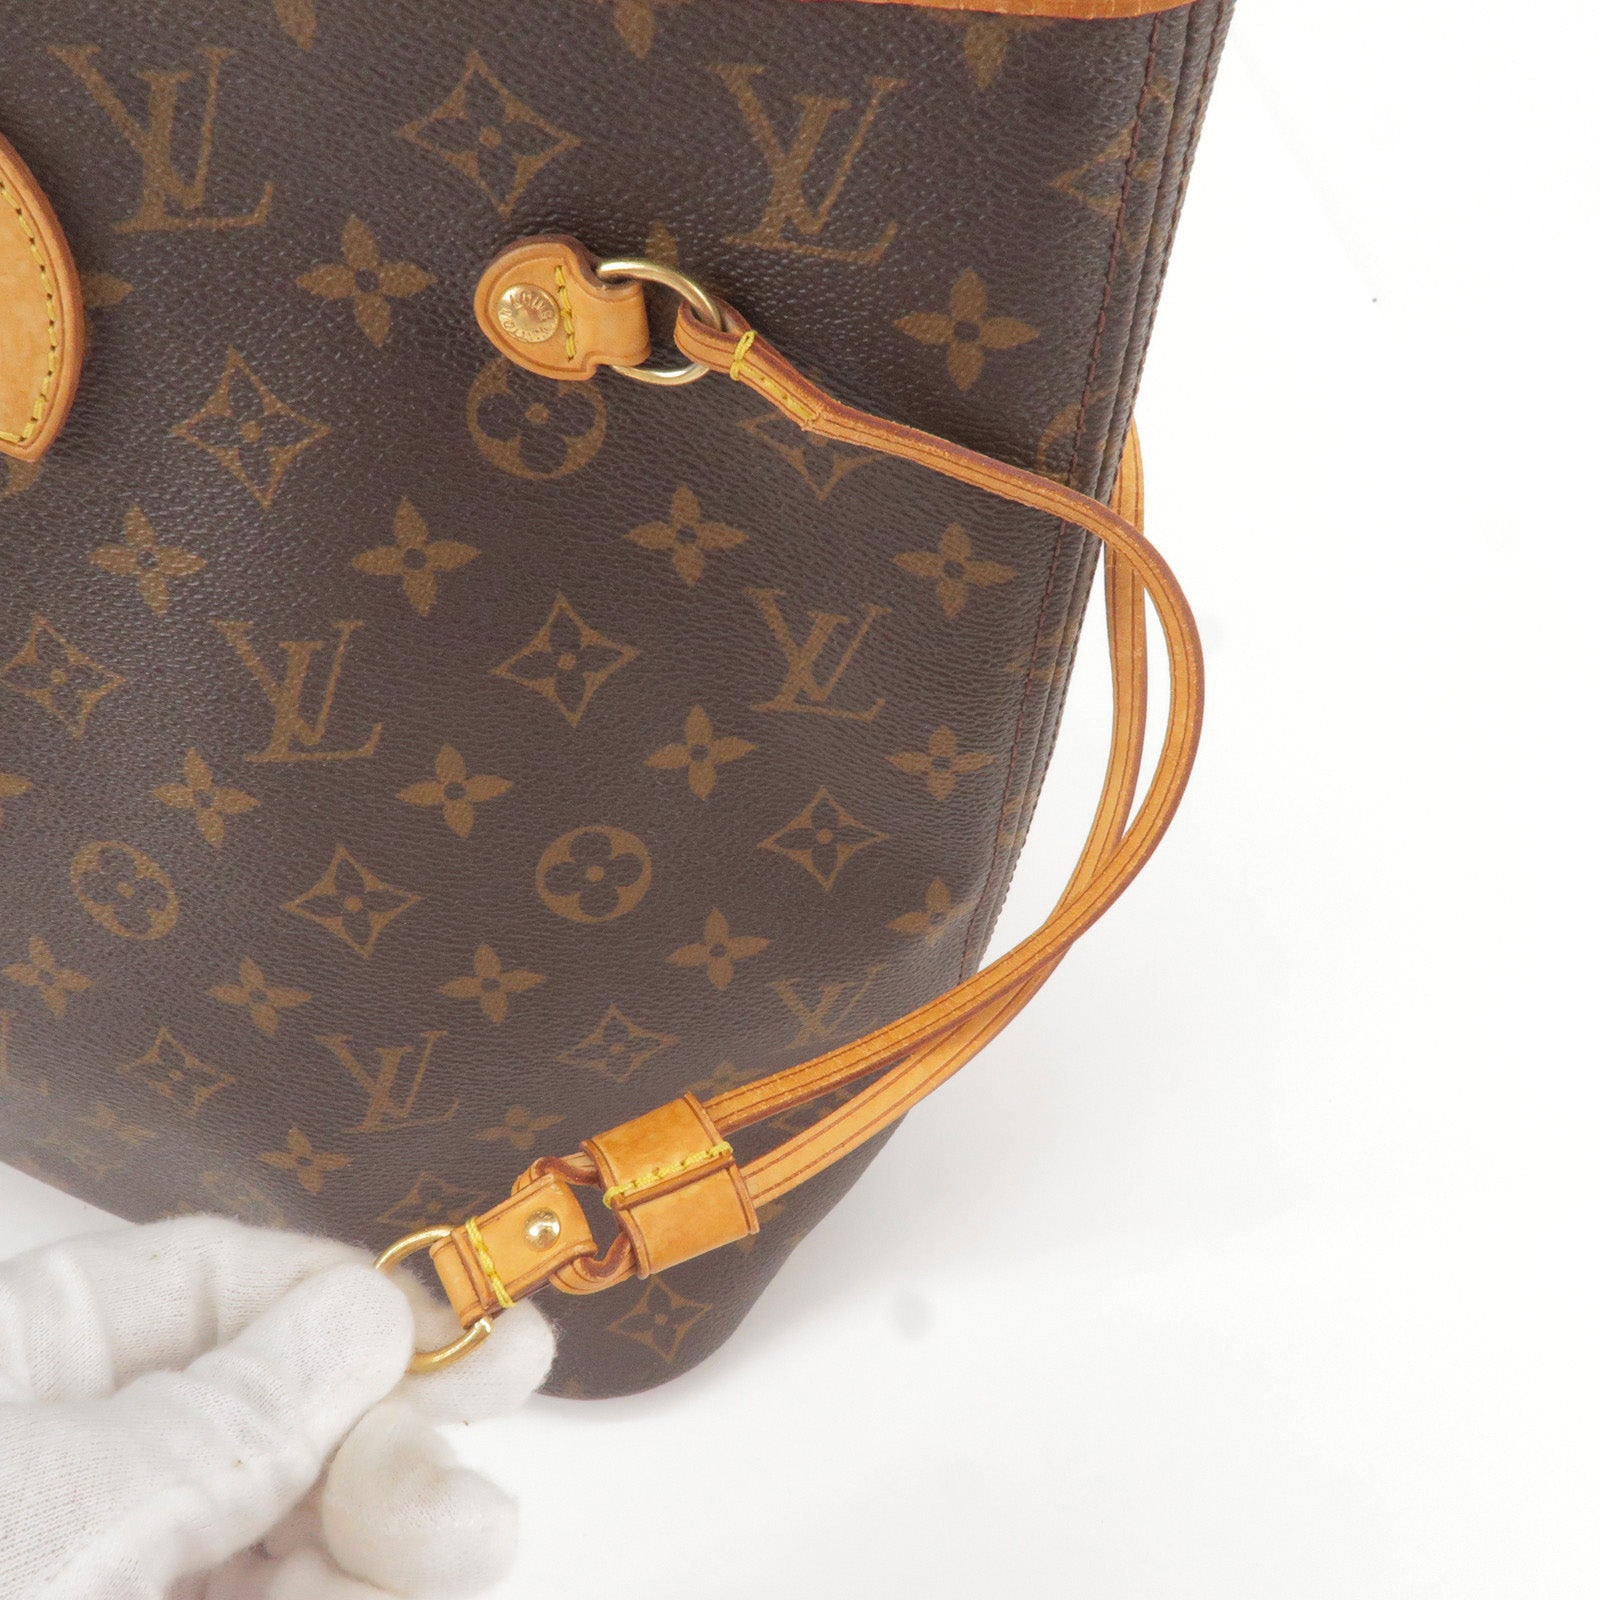 Louis Vuitton M40156 Neverfull Mm Shoulder Bag Monogram Canvas